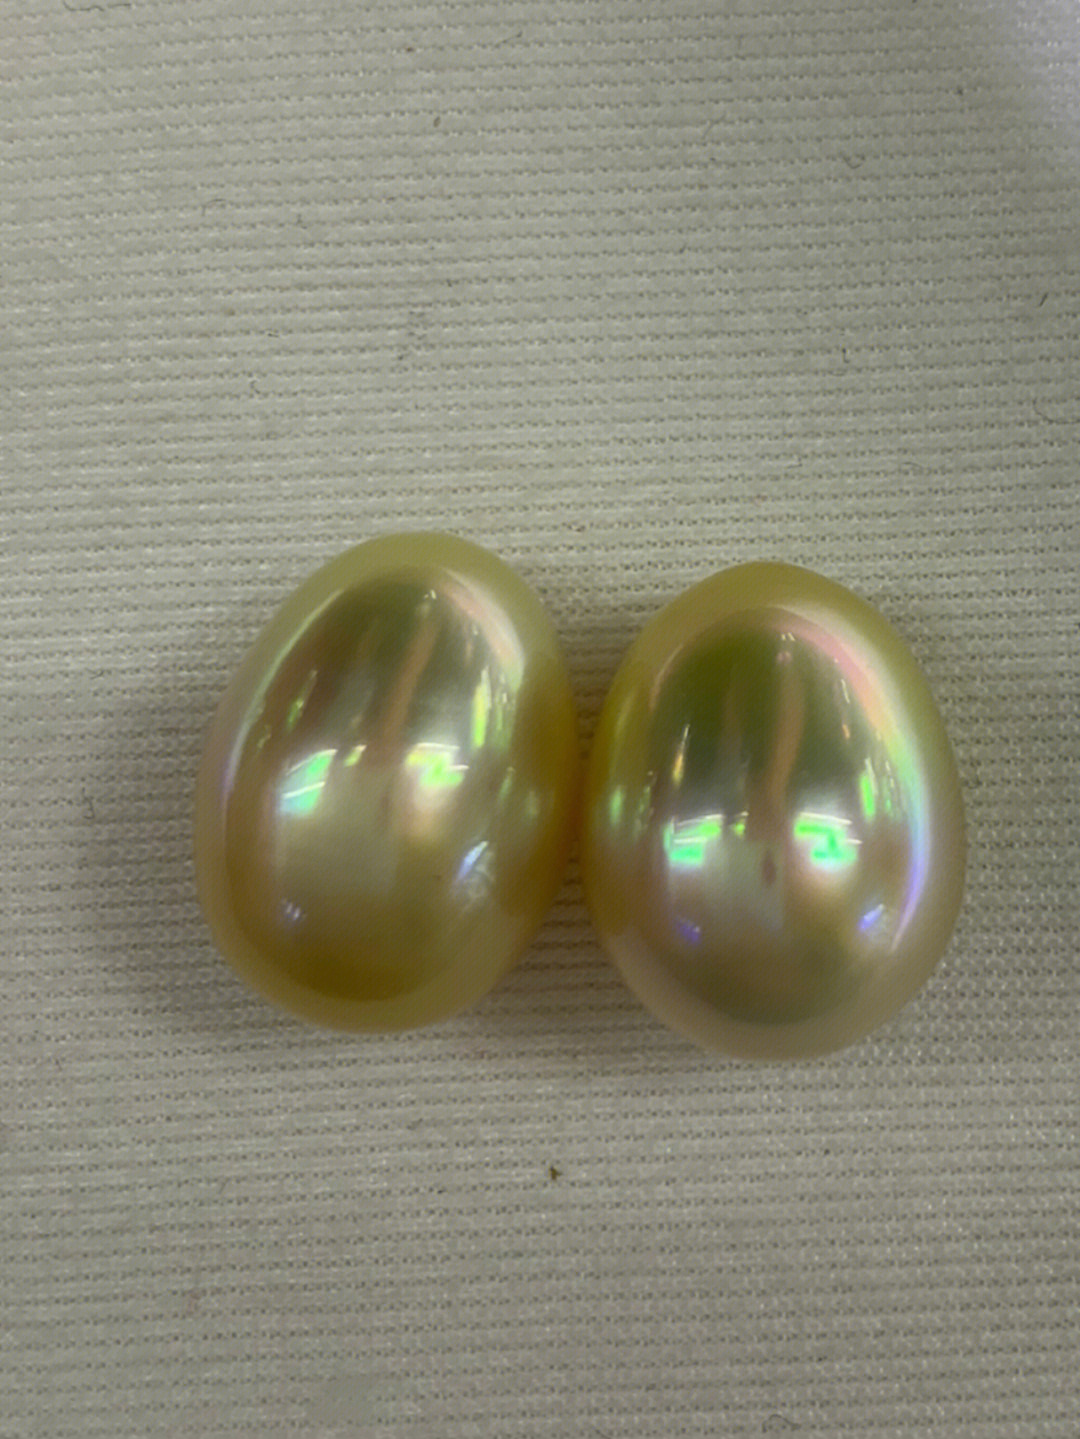 水滴91炫彩浅金色,超级滑皮透亮,肉眼无瑕疵,做款超好看的一对珠子